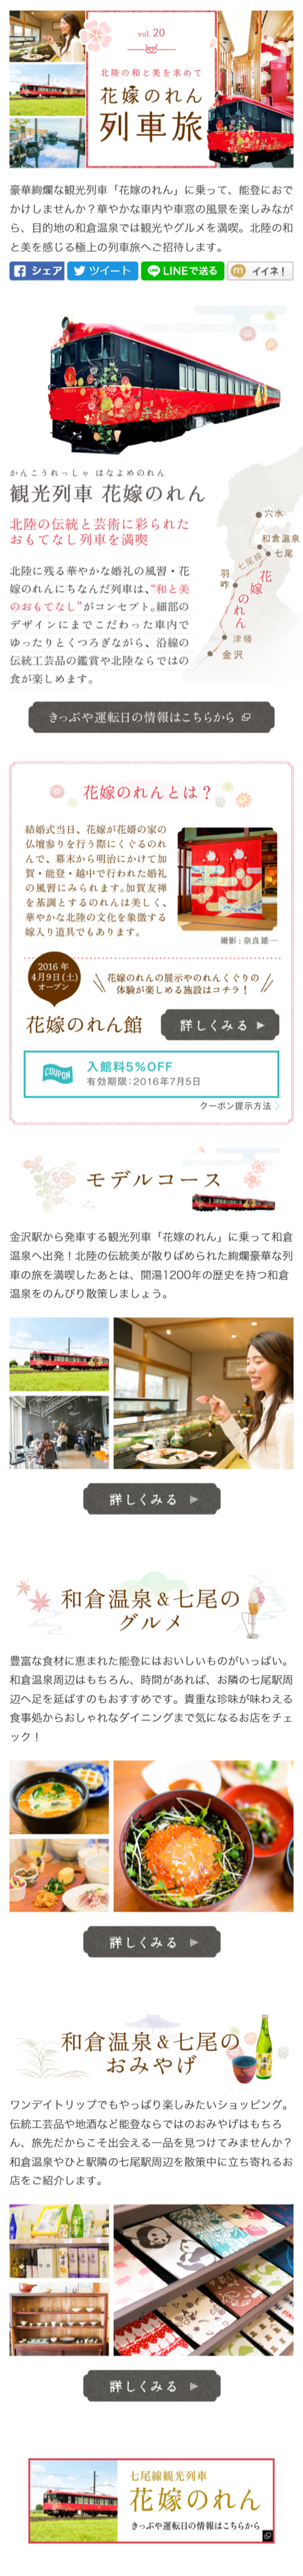 花嫁のれん列車旅_sp_1